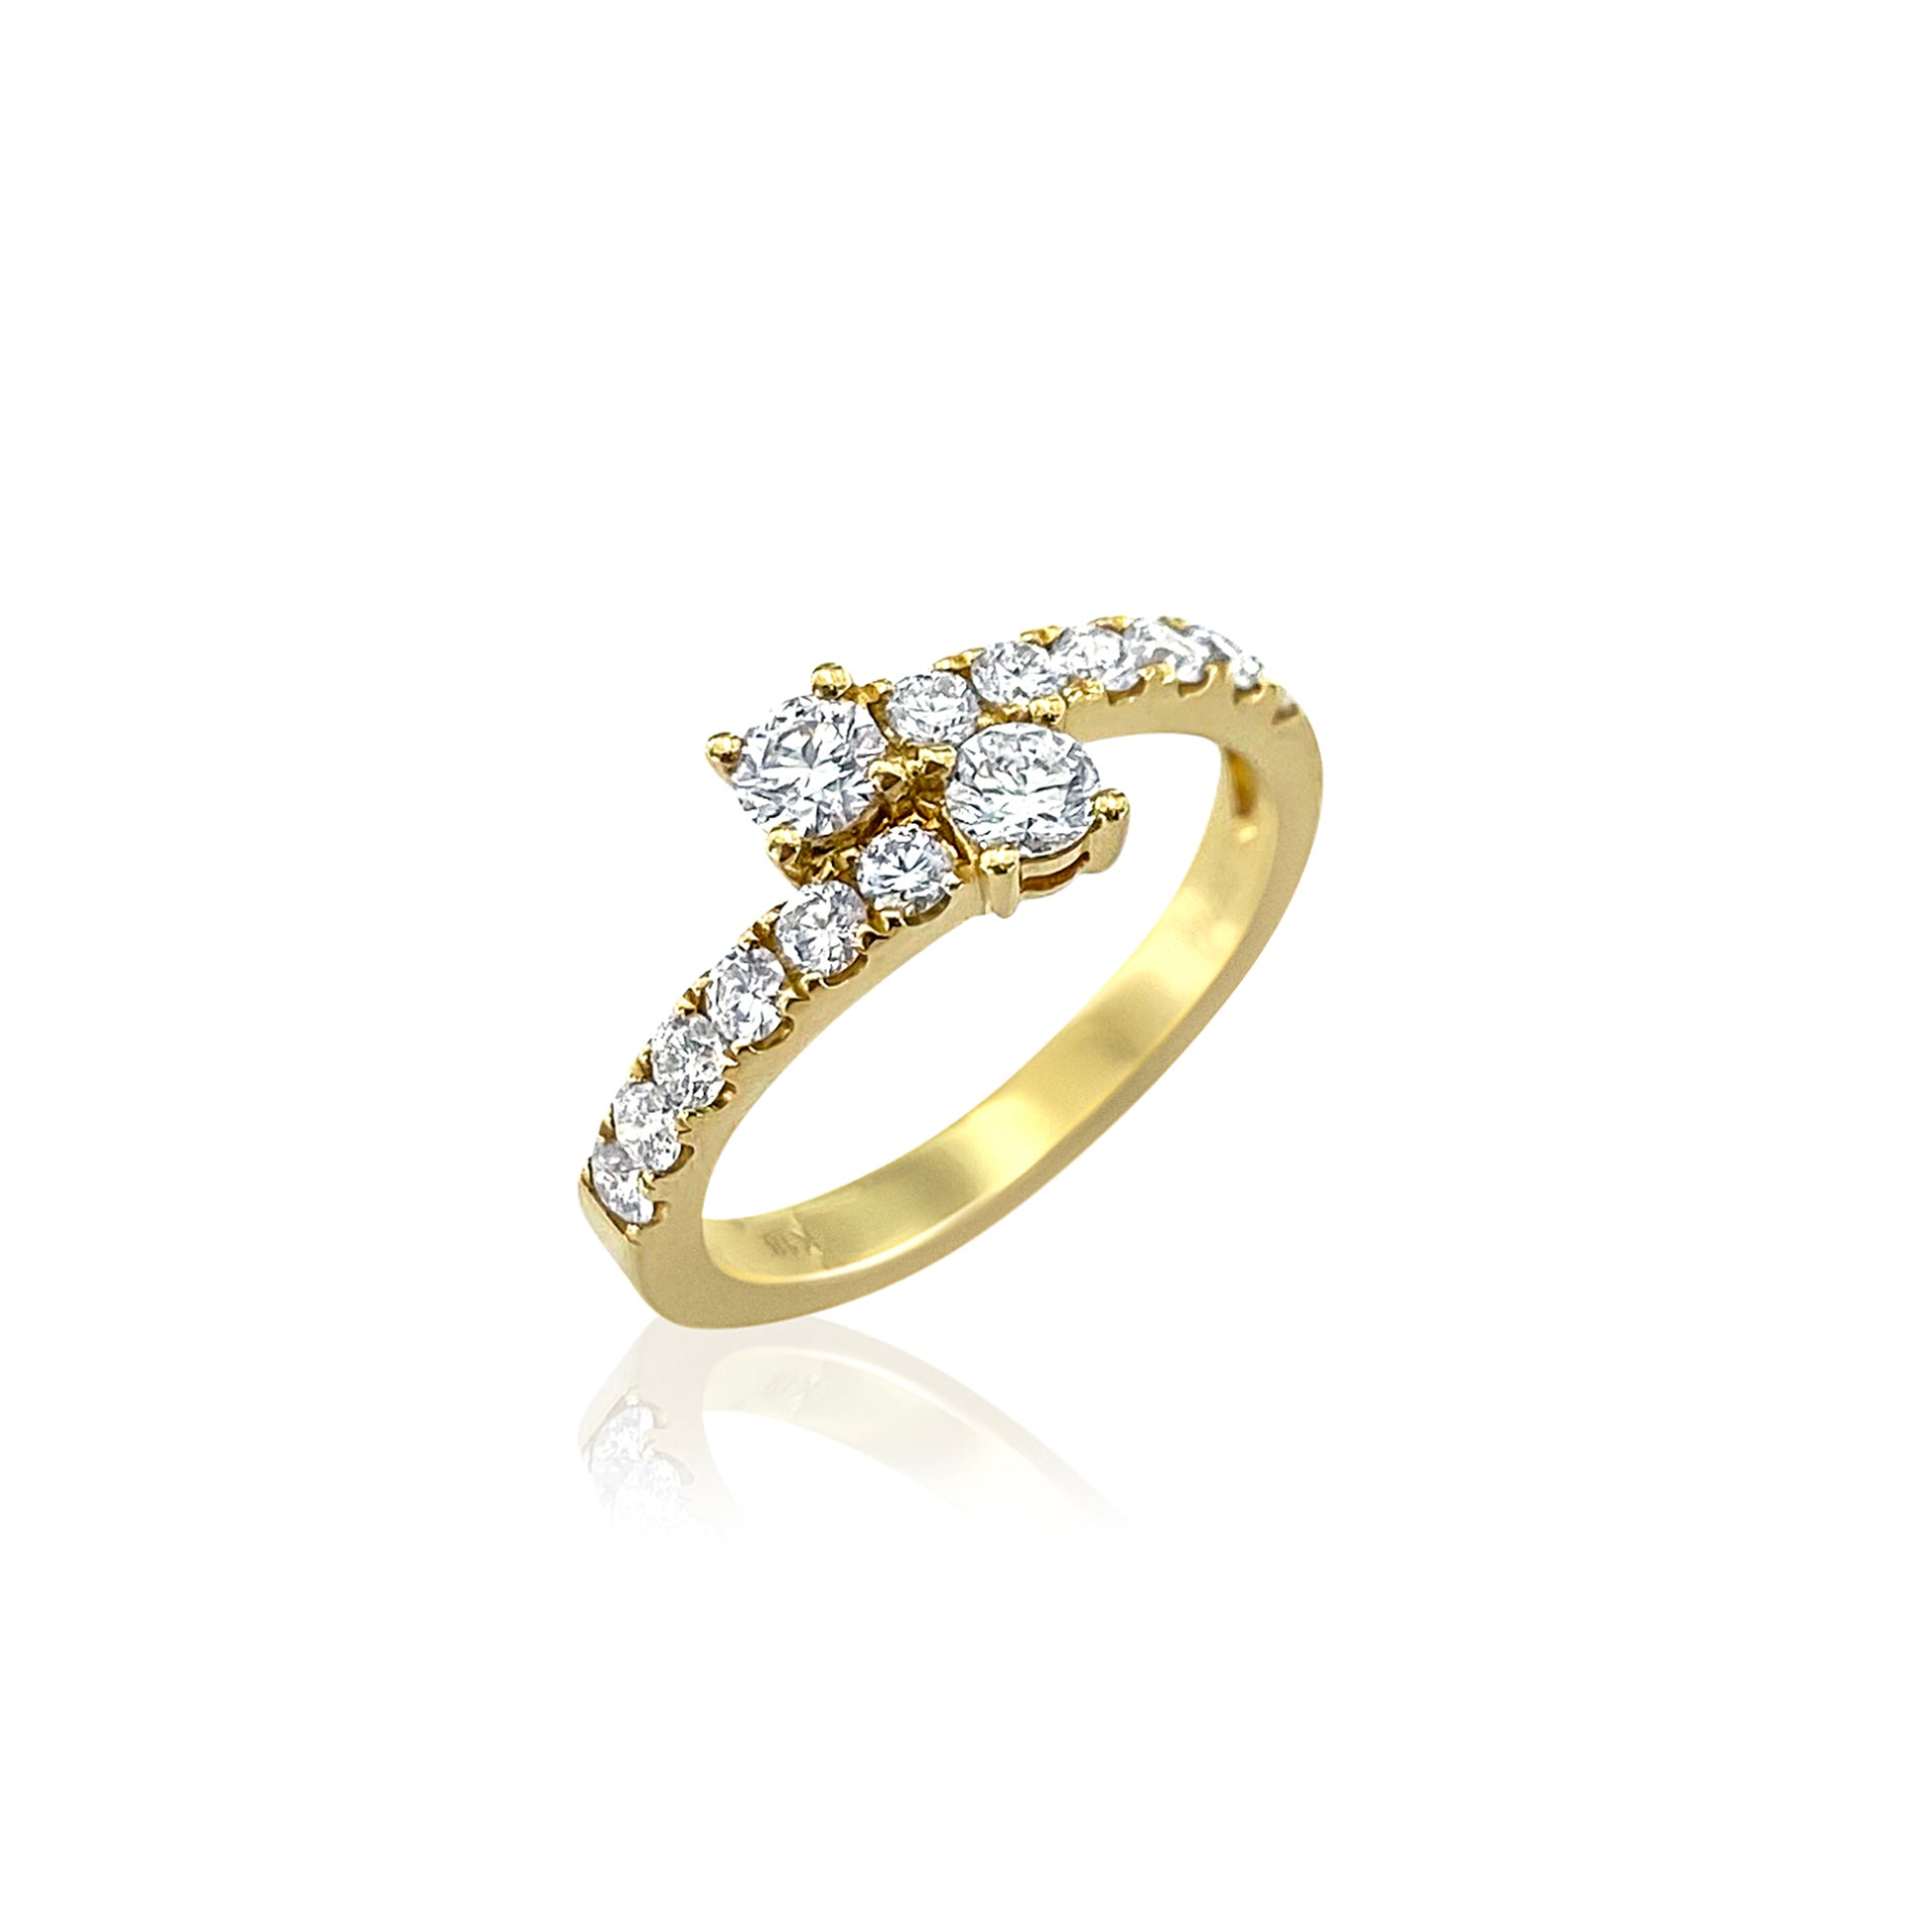 San Antonio Jewelry yellow gold diamond wrap around ring. 